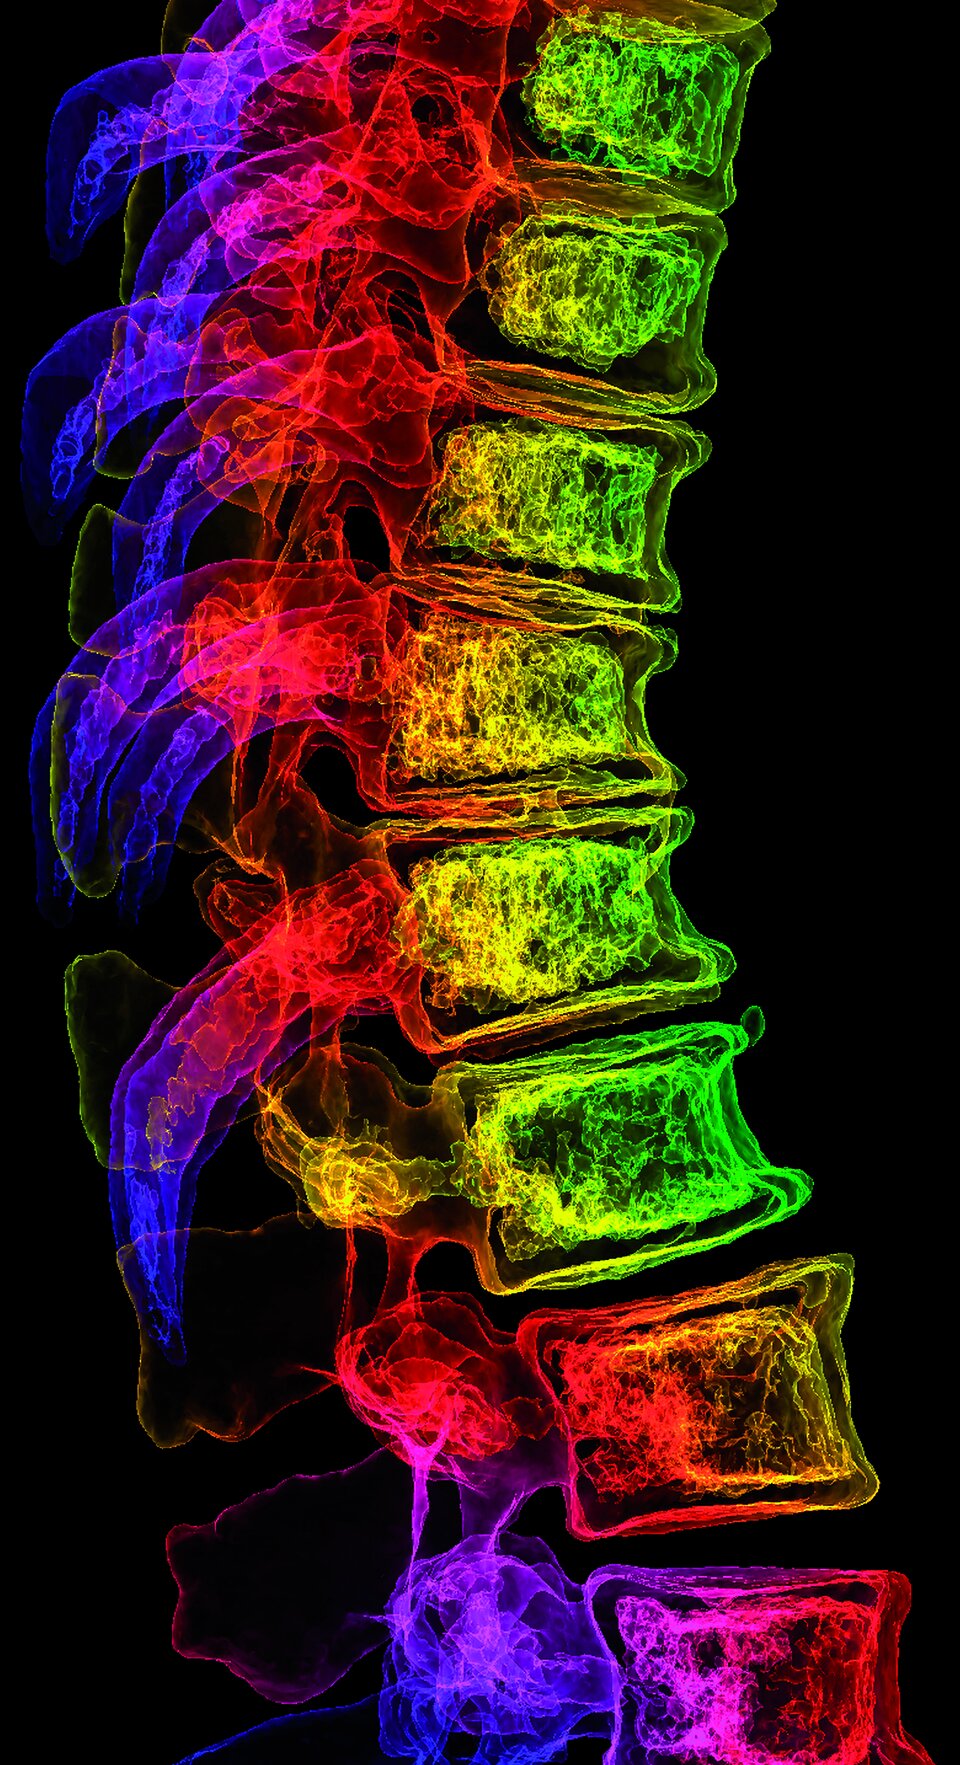 Osteoporotische Verringerung der Wirbelkörperhöhe und Kyphose im 3D-CT-Scan.
